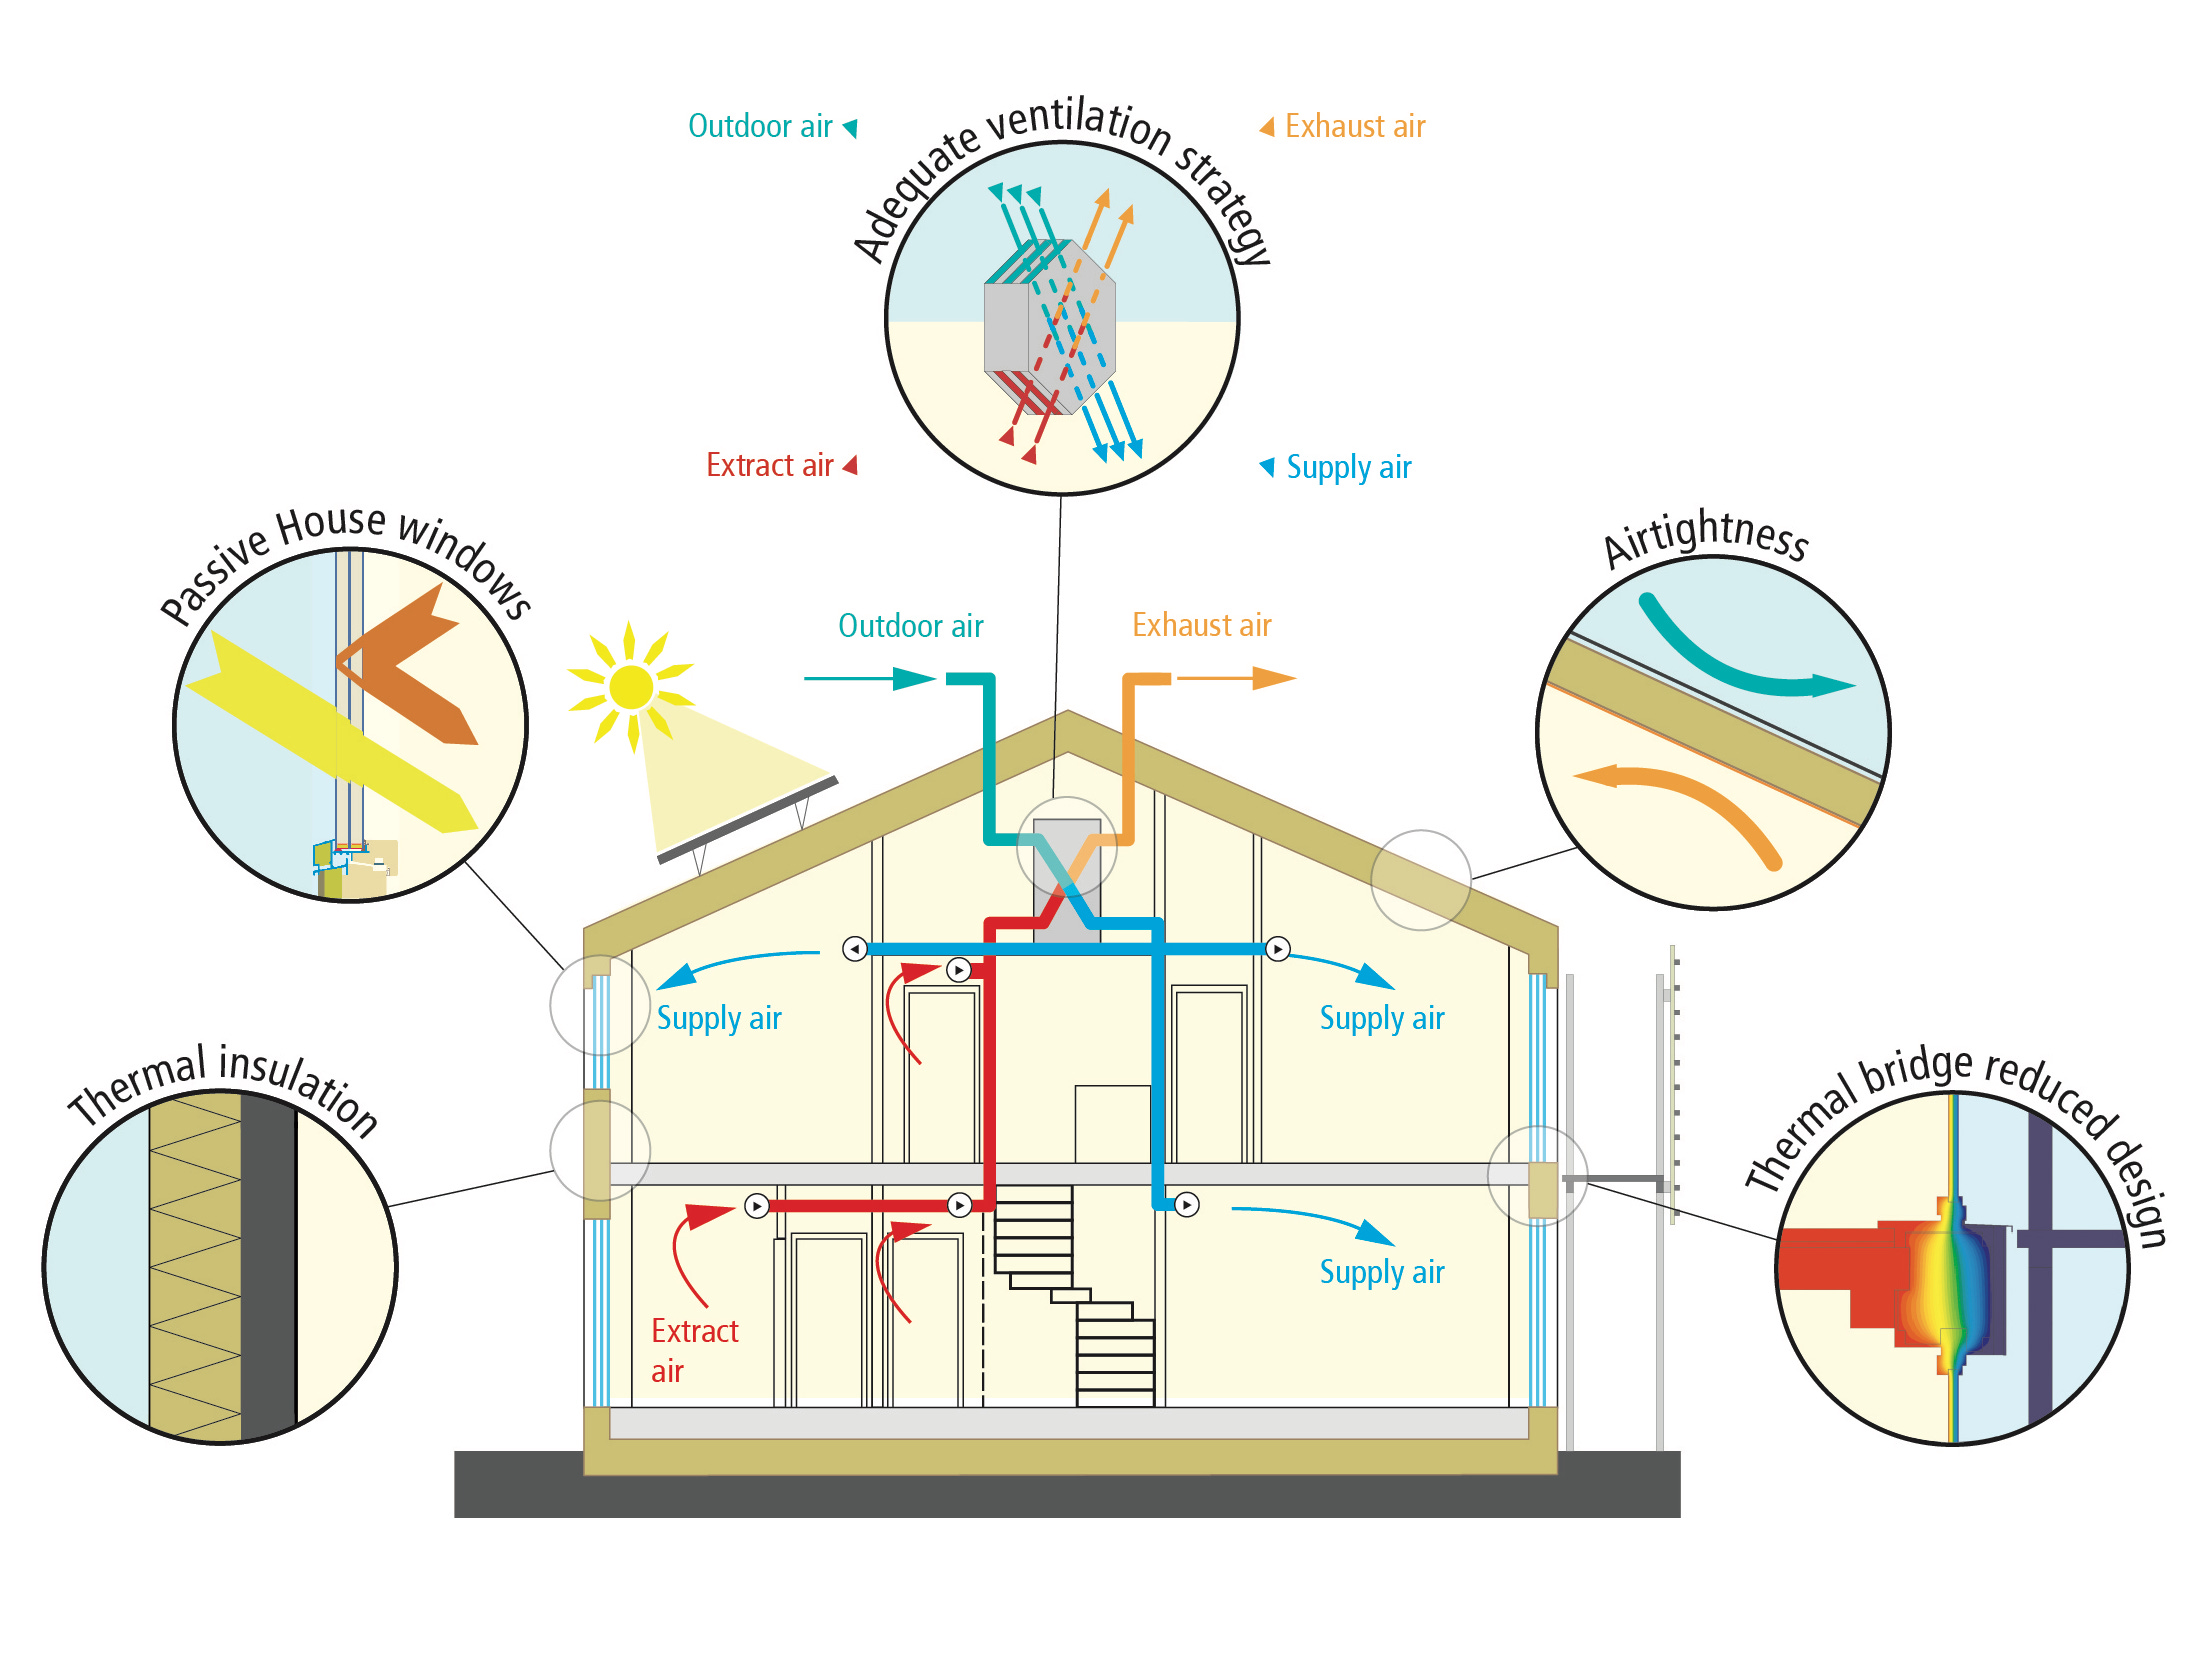 Passivhaus Passivehouse energy efficient building Cyprus climate